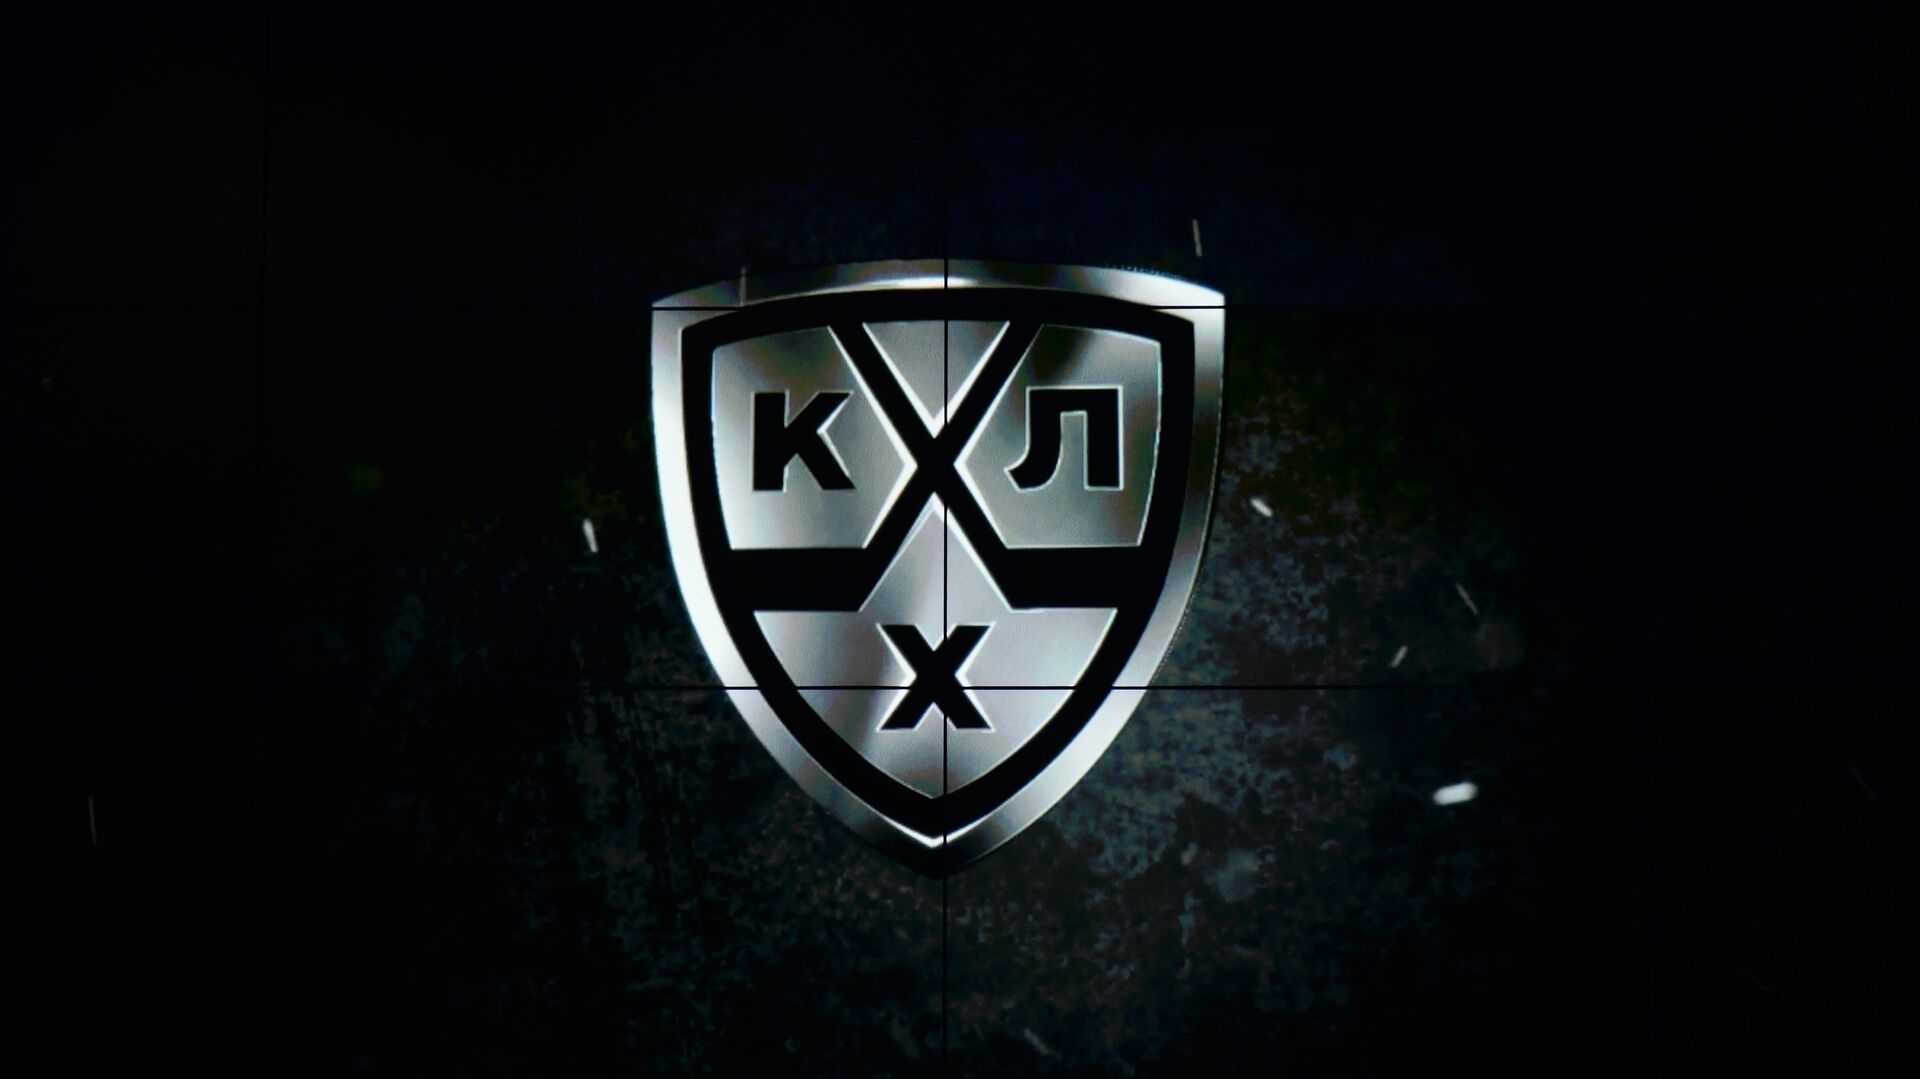 Логотип Континентальной хоккейной лиги (КХЛ) - РИА Новости, 1920, 02.12.2020